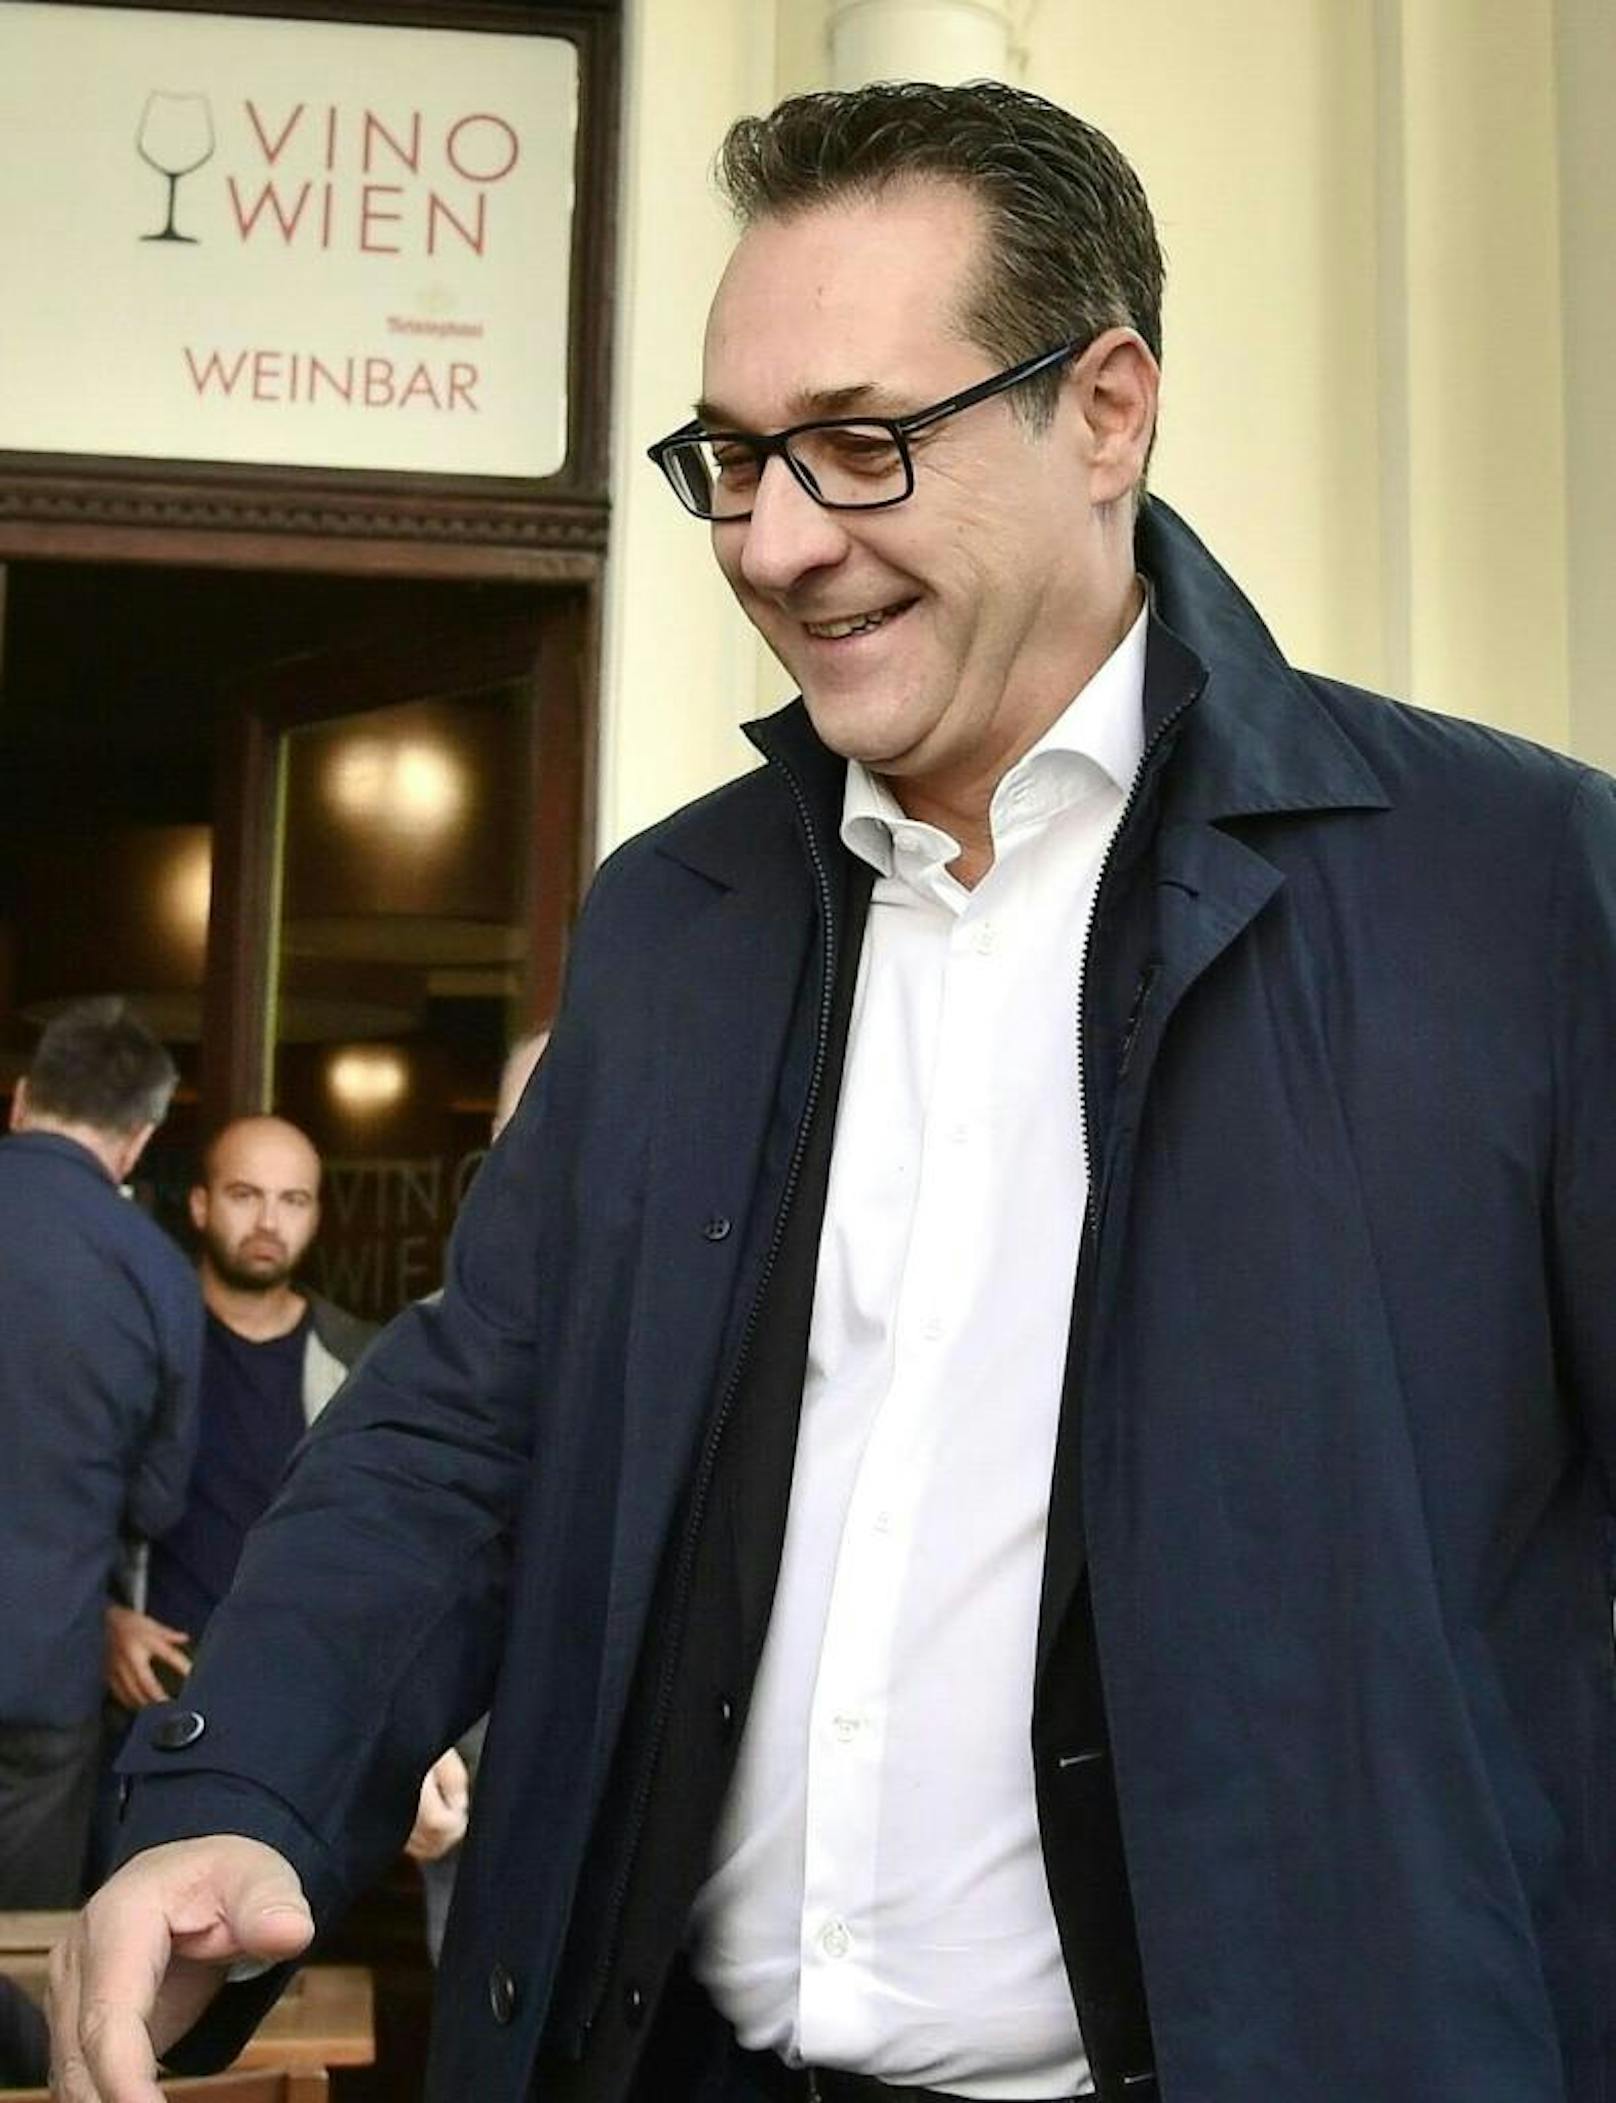 Der gefallene FPÖ-Chef traf kurz vor 10 Uhr am Dienstag, 1. Oktober 2019 in der "Vino Weinbar" in der Lichtenfelsgasse ein.